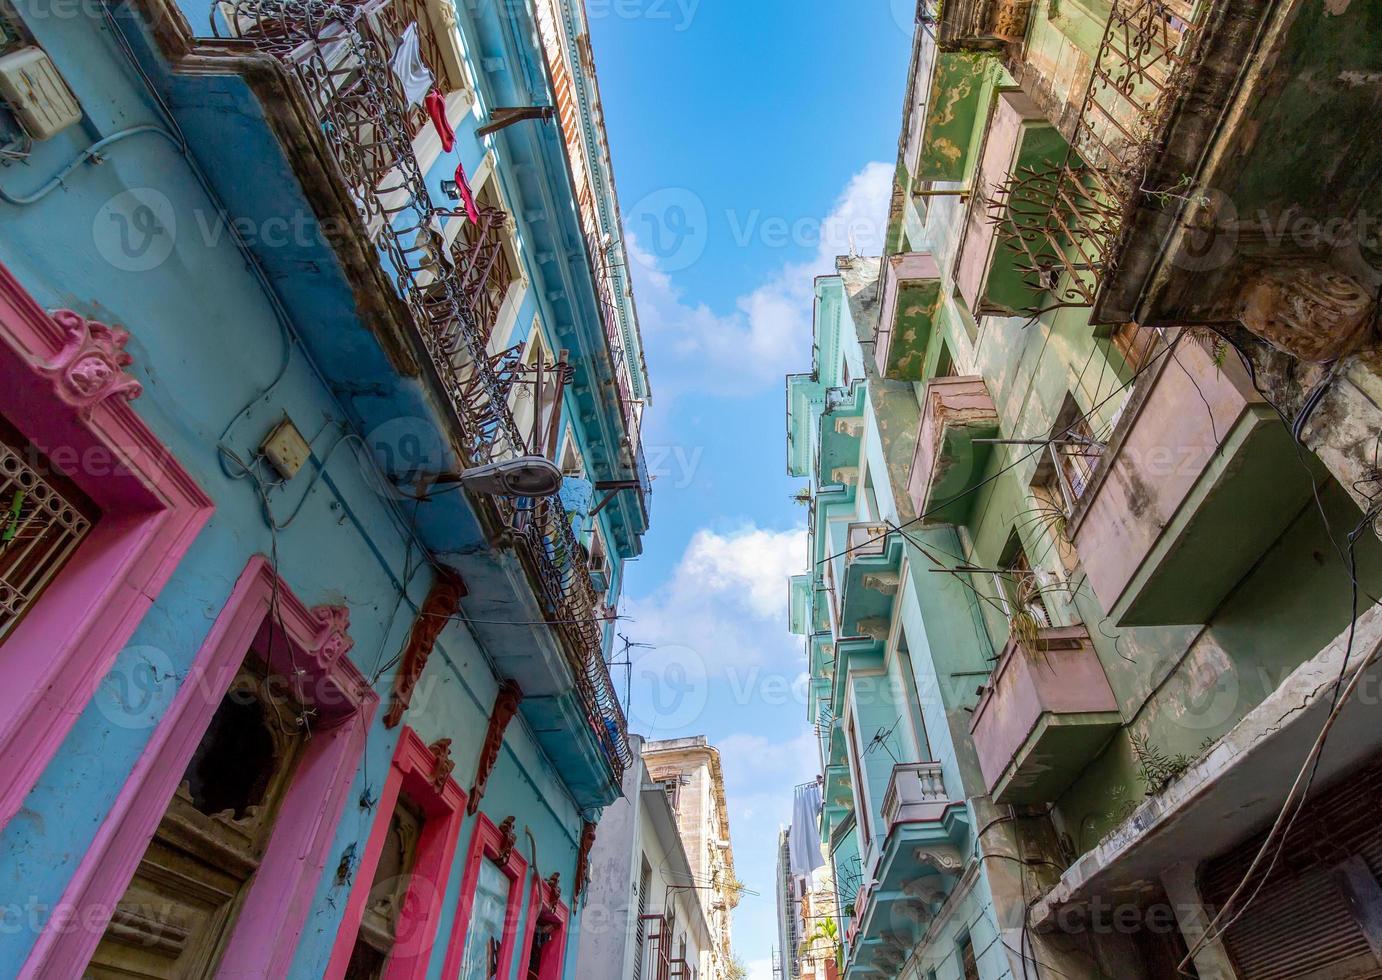 pitorescas e coloridas ruas de havana no centro histórico da cidade de havana vieja perto de paseo el prado e capitolio foto